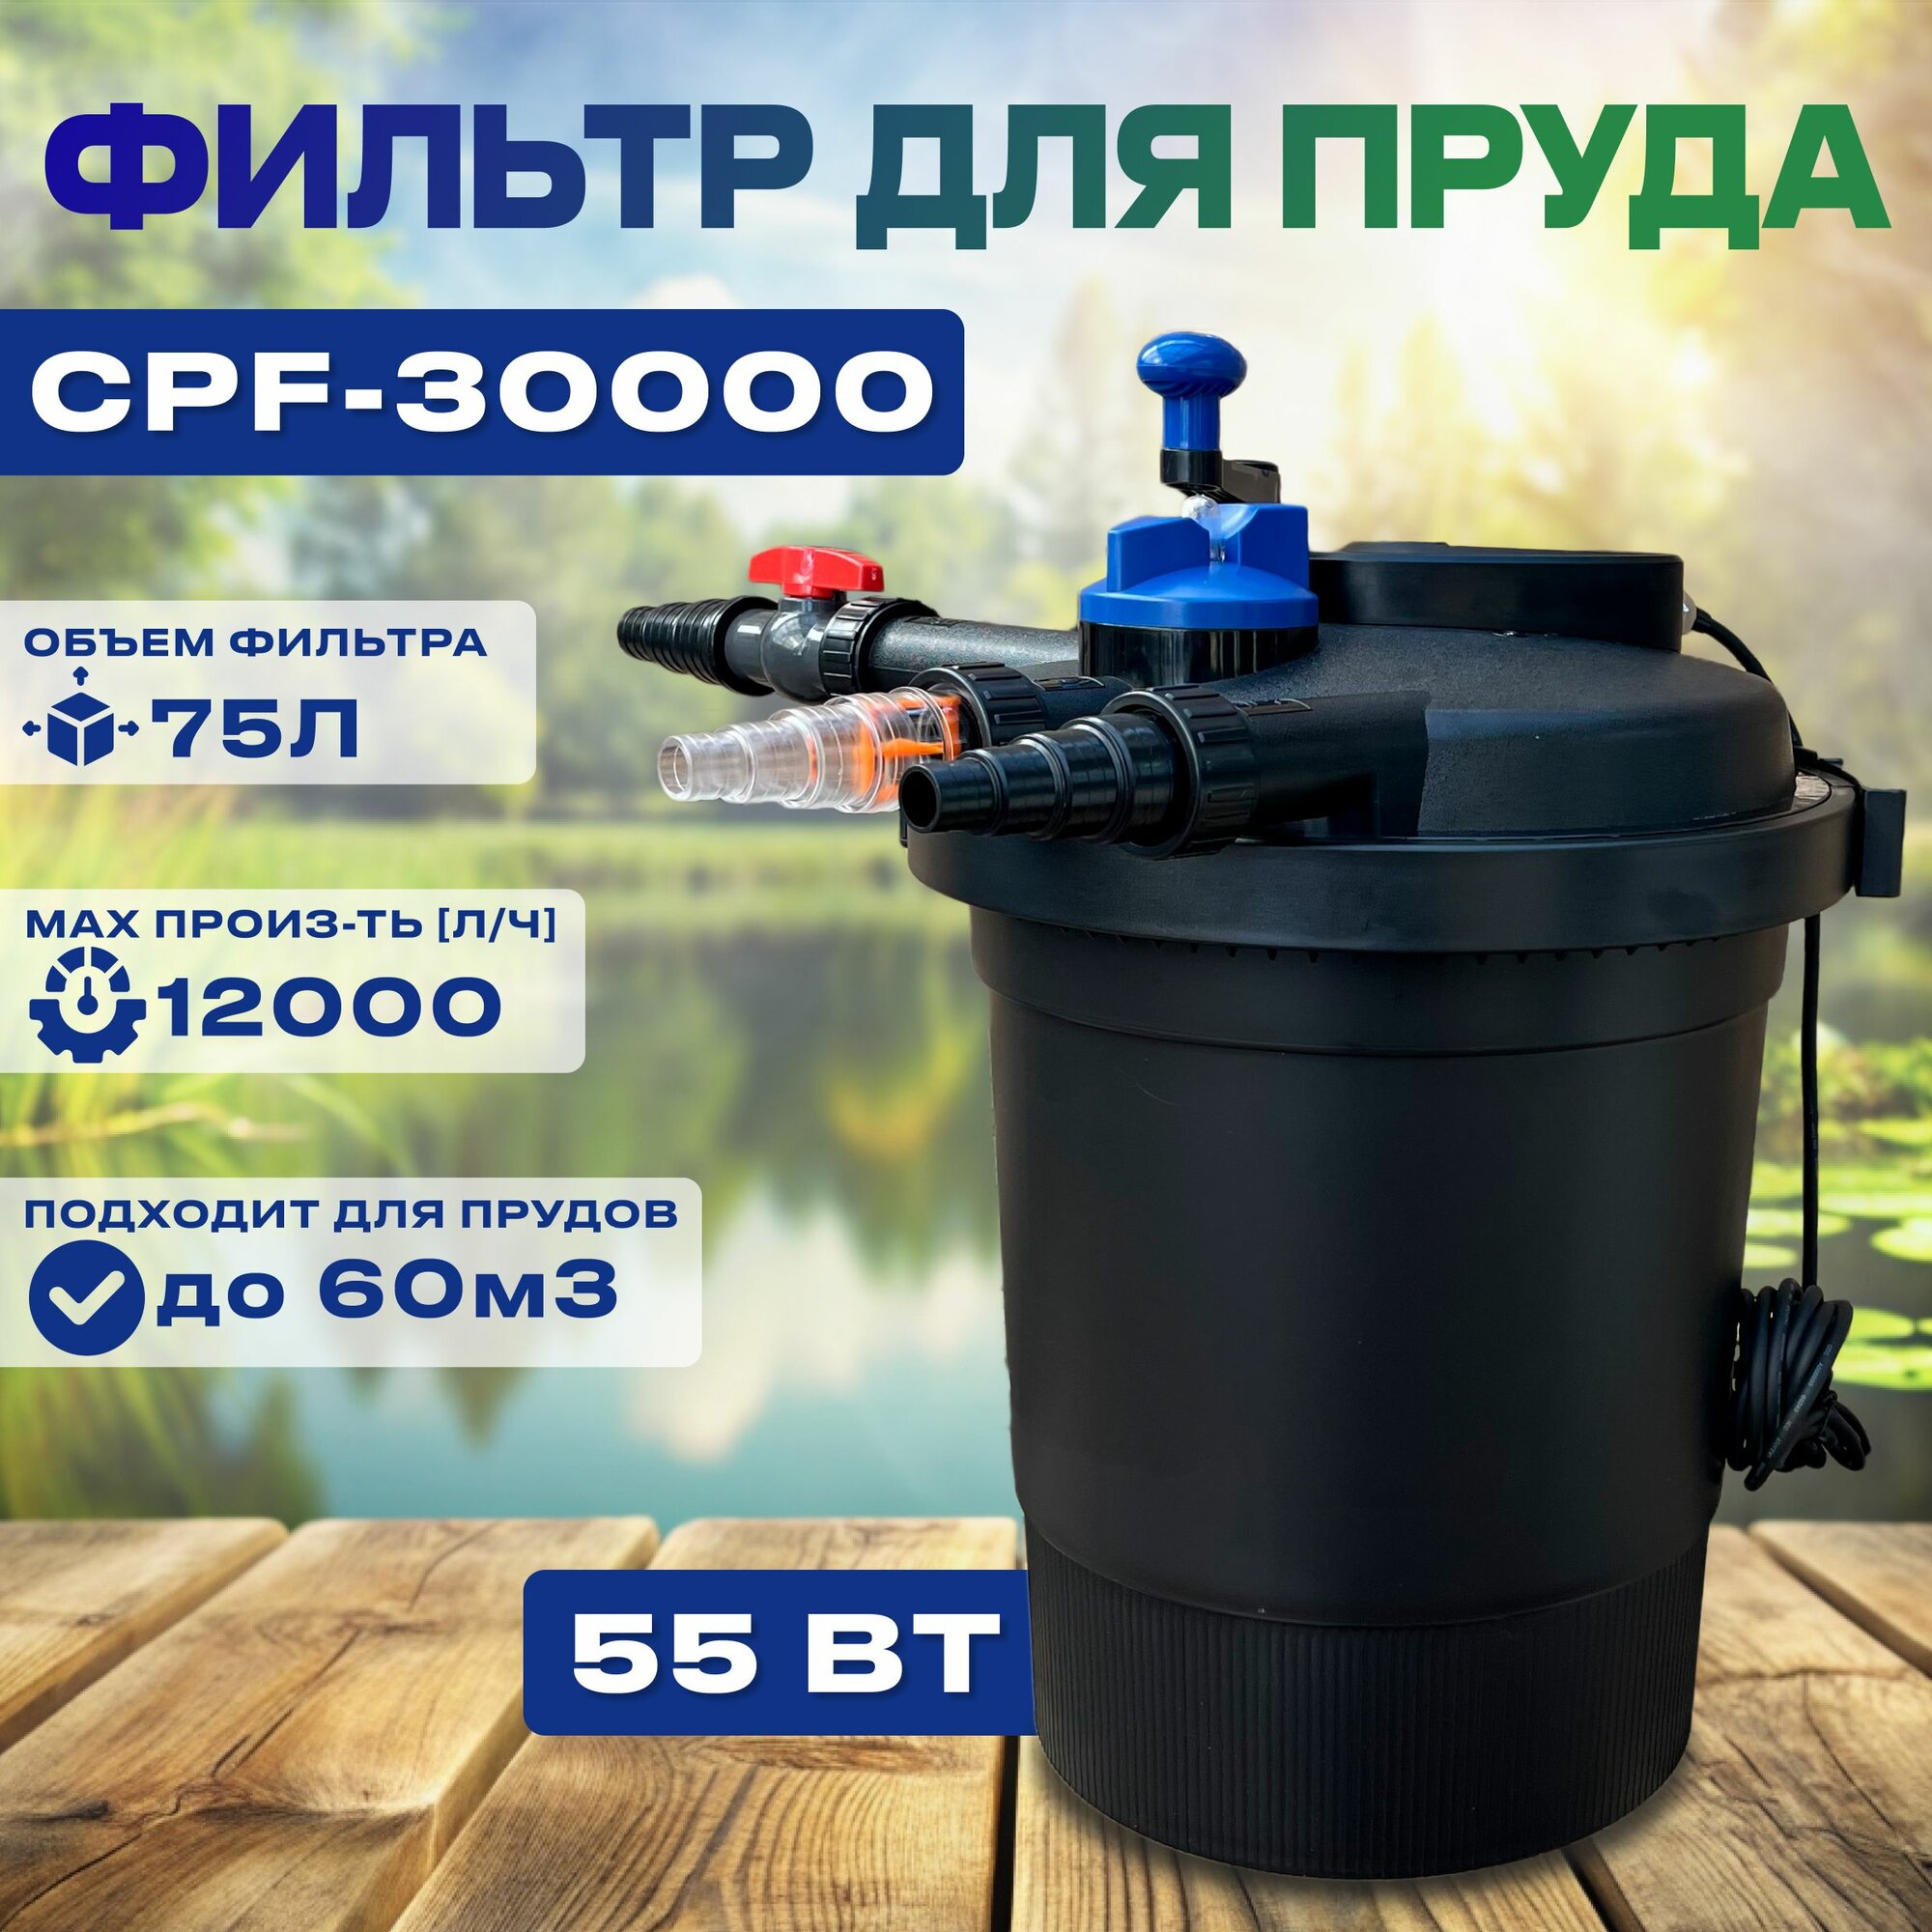 CPF-30000 Напорный фильтр для пруда до 60м3 с УФ 55Вт